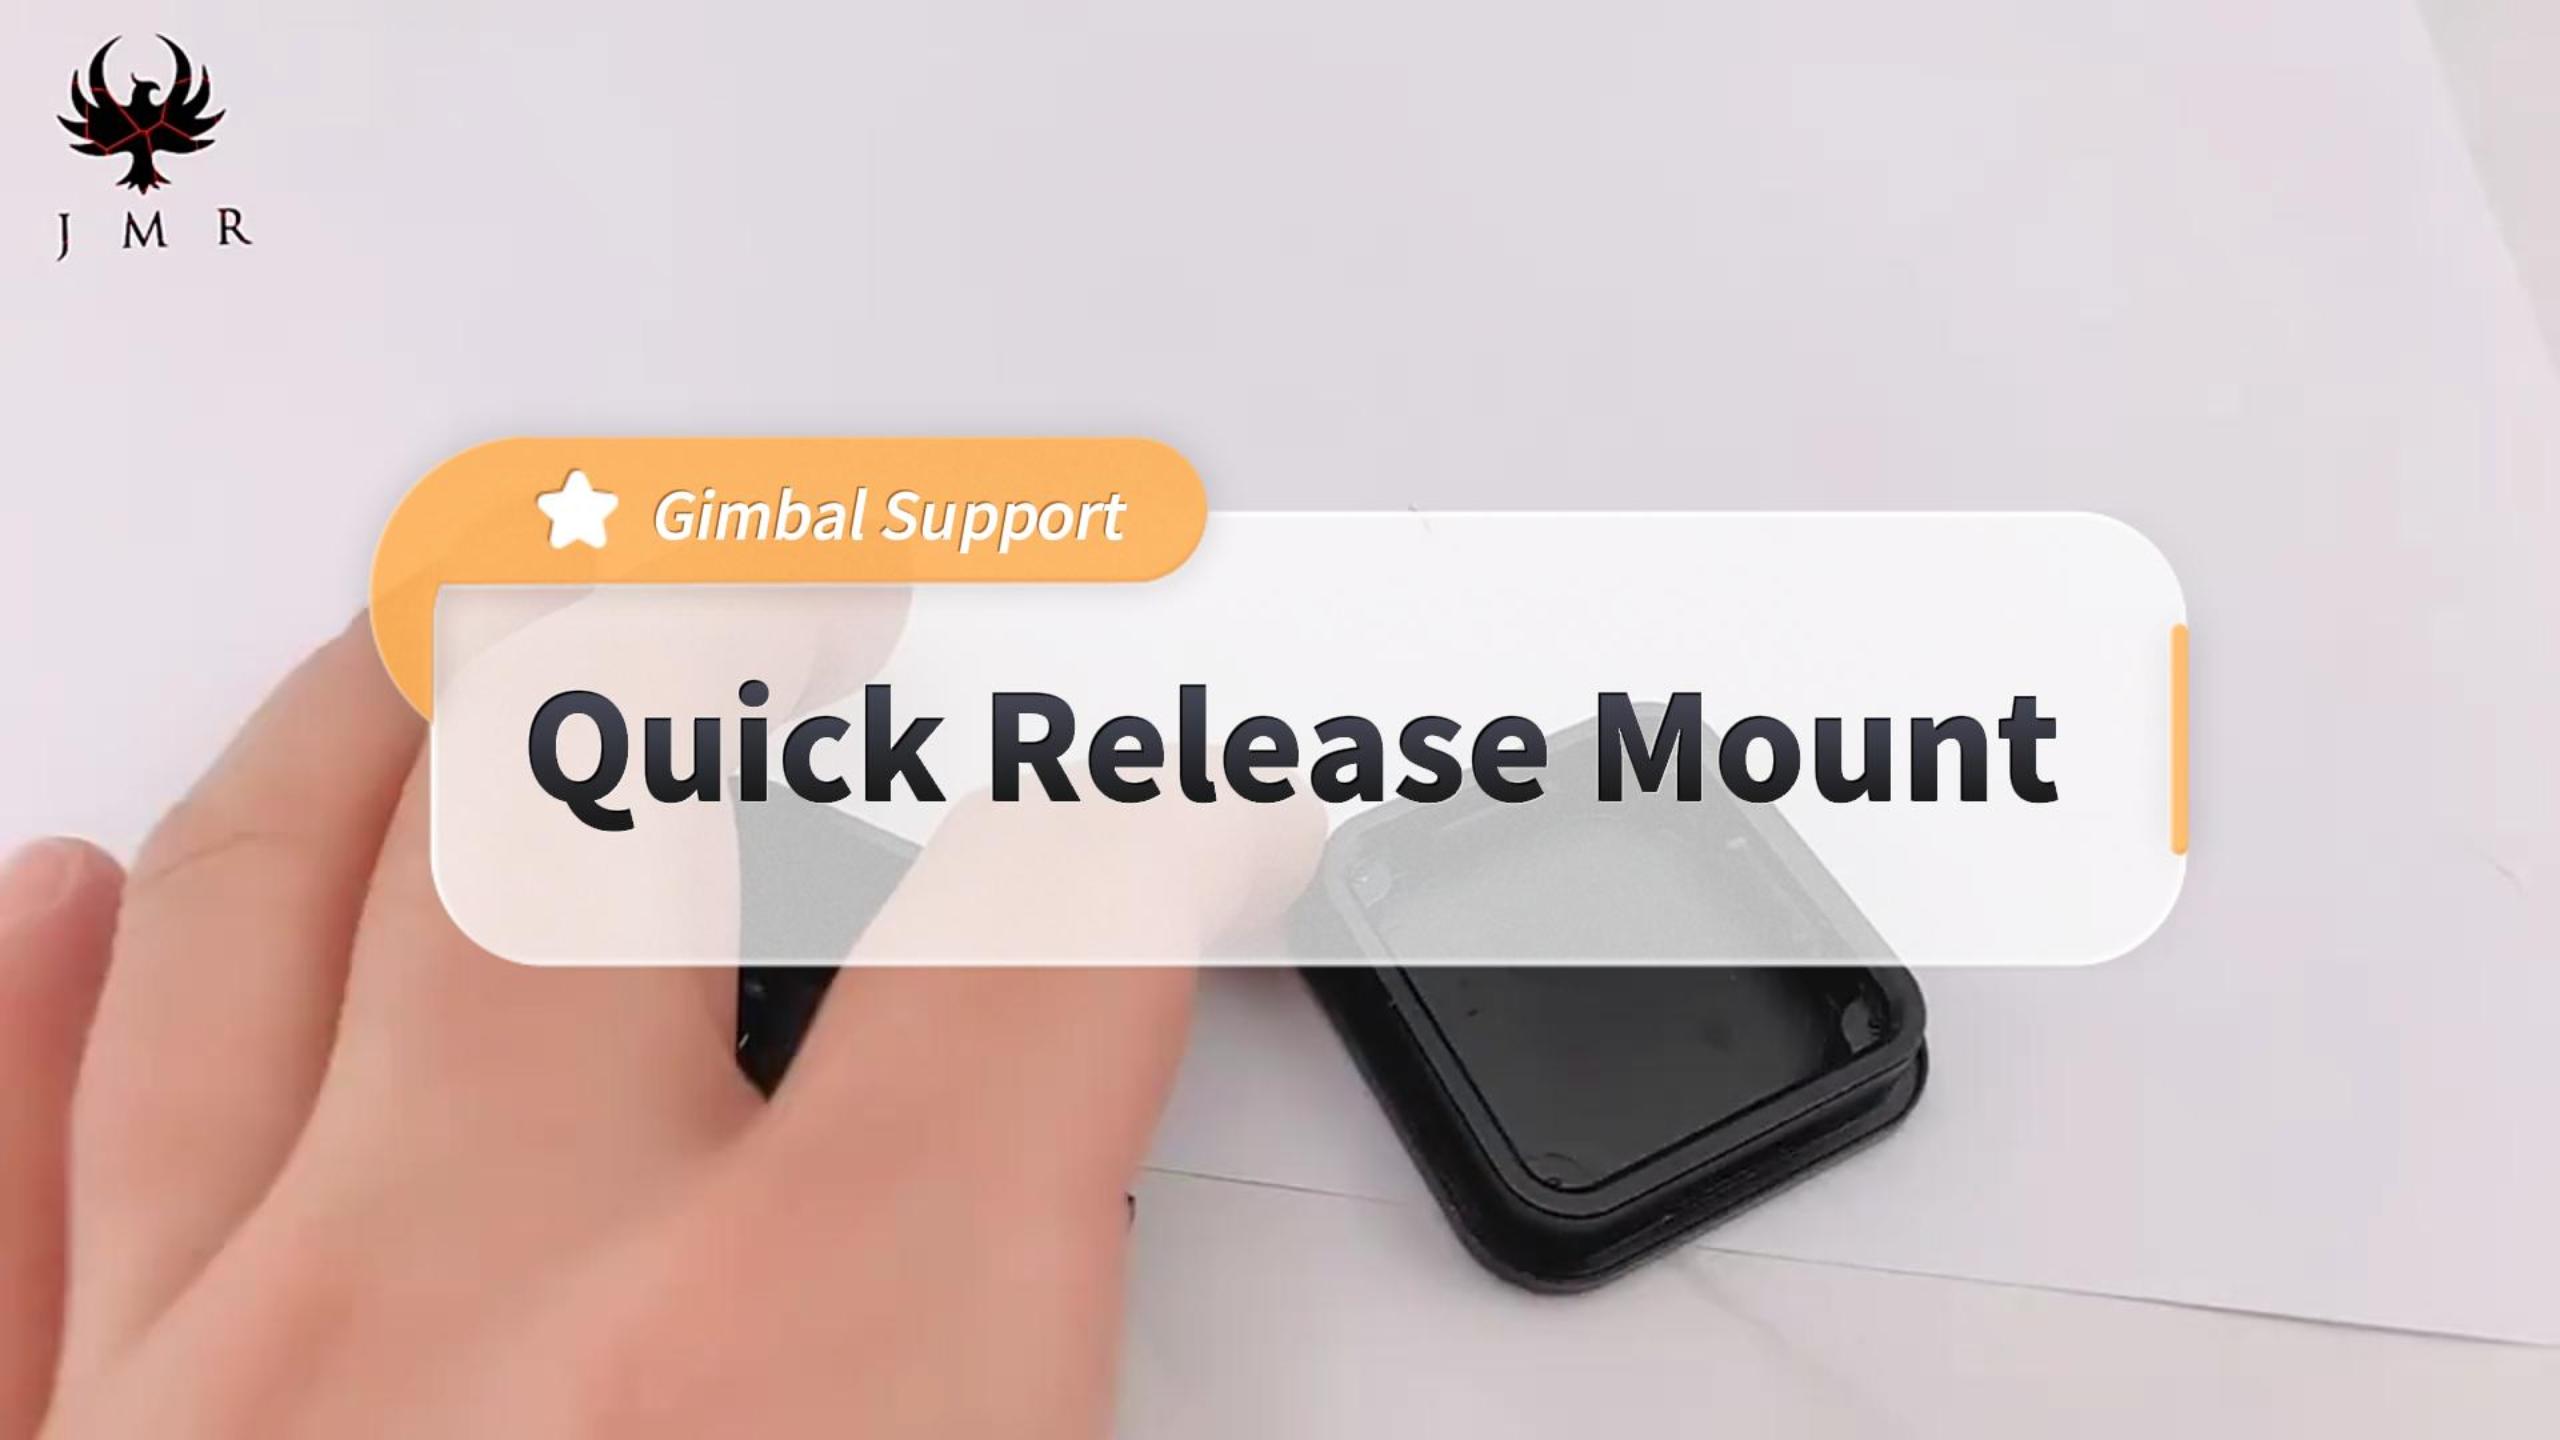 Support de Gimbal Mount à libération rapide